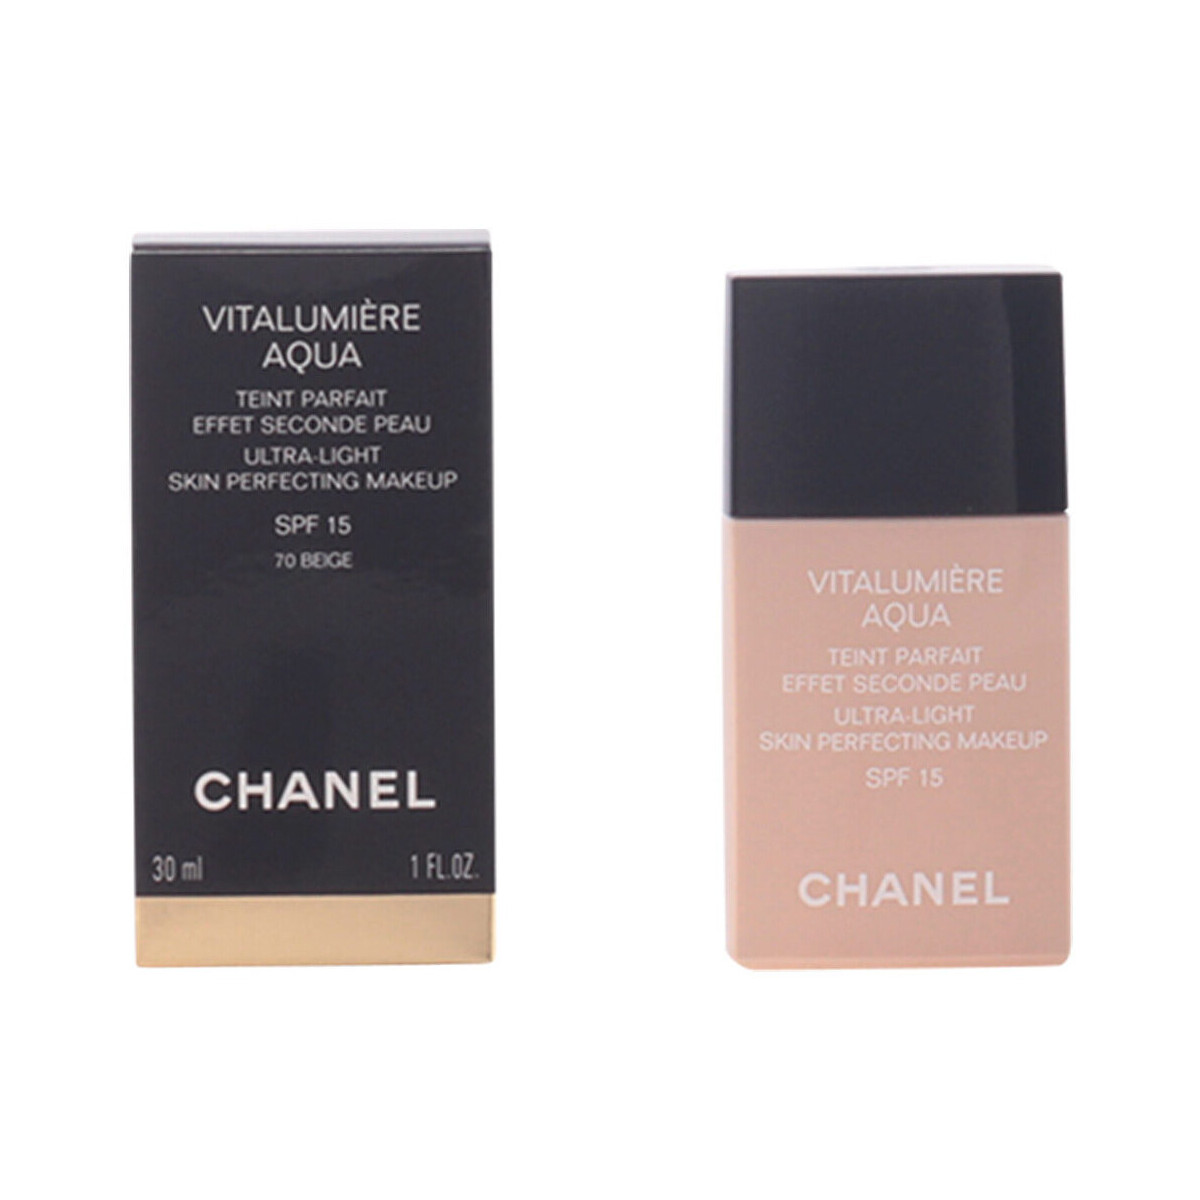 Belleza Base de maquillaje Chanel Vitalumière Aqua Teint Parfait 70-beige 